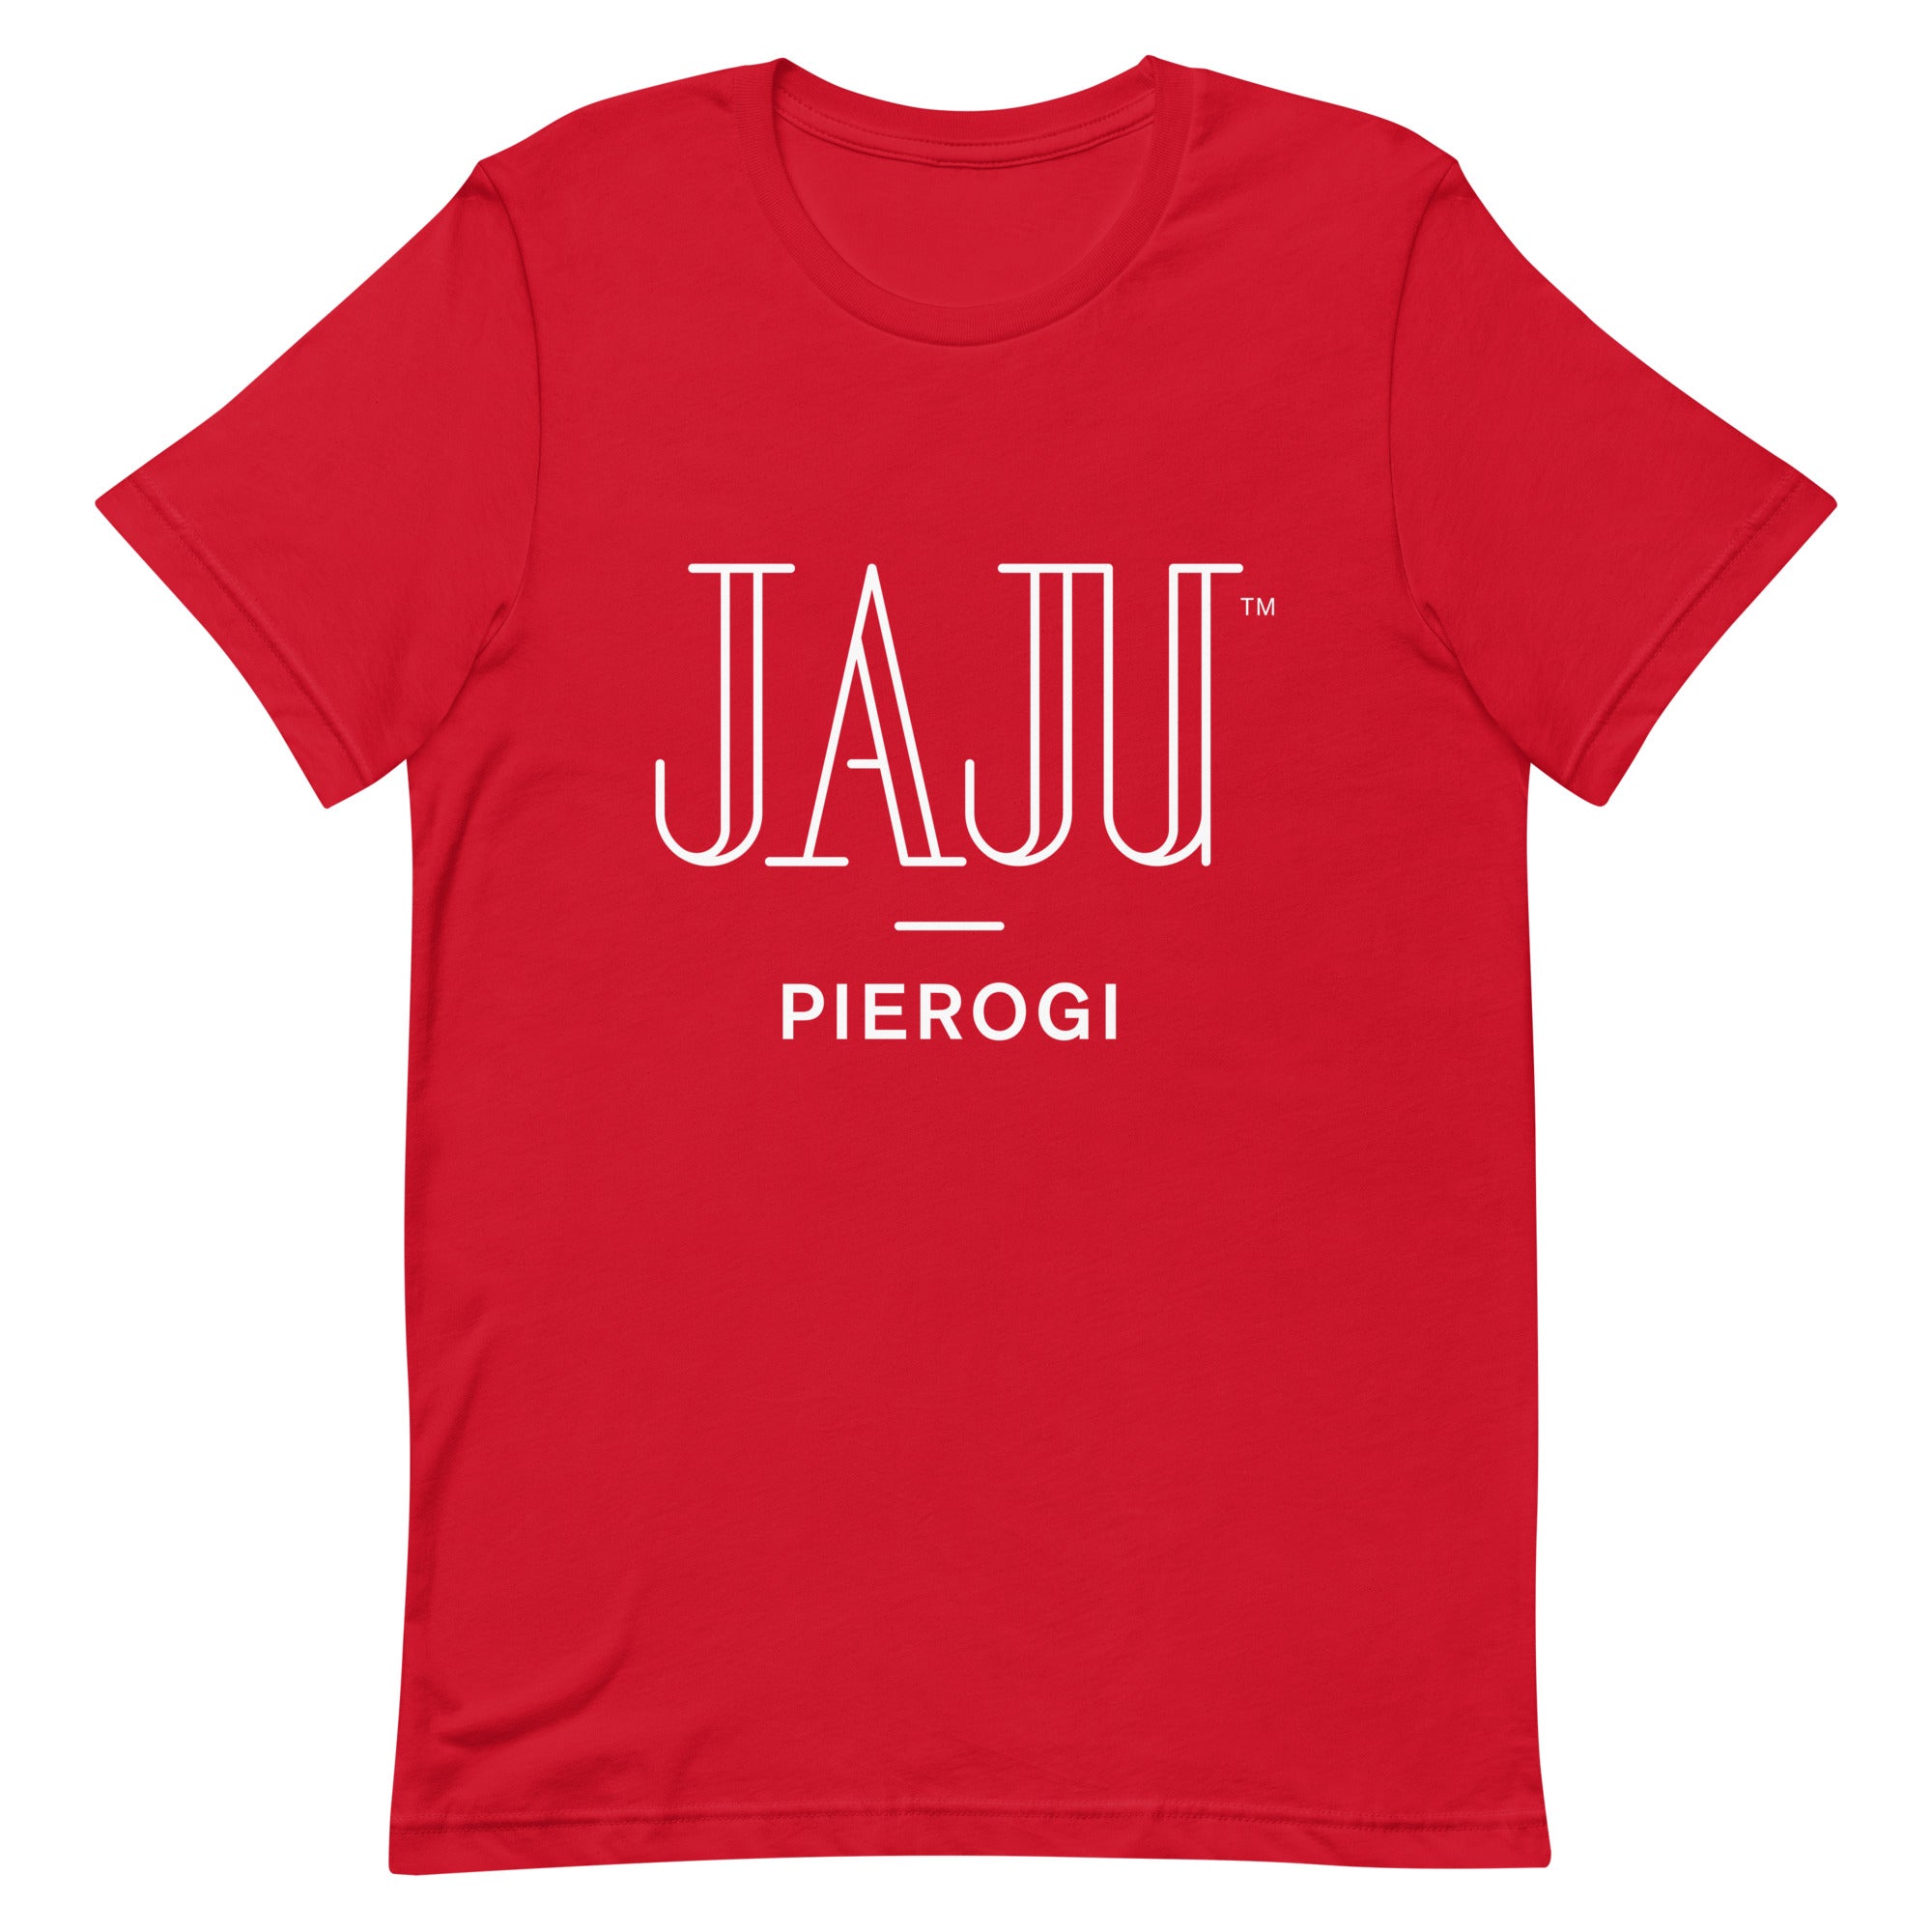 Jaju Pierogi brand shirt